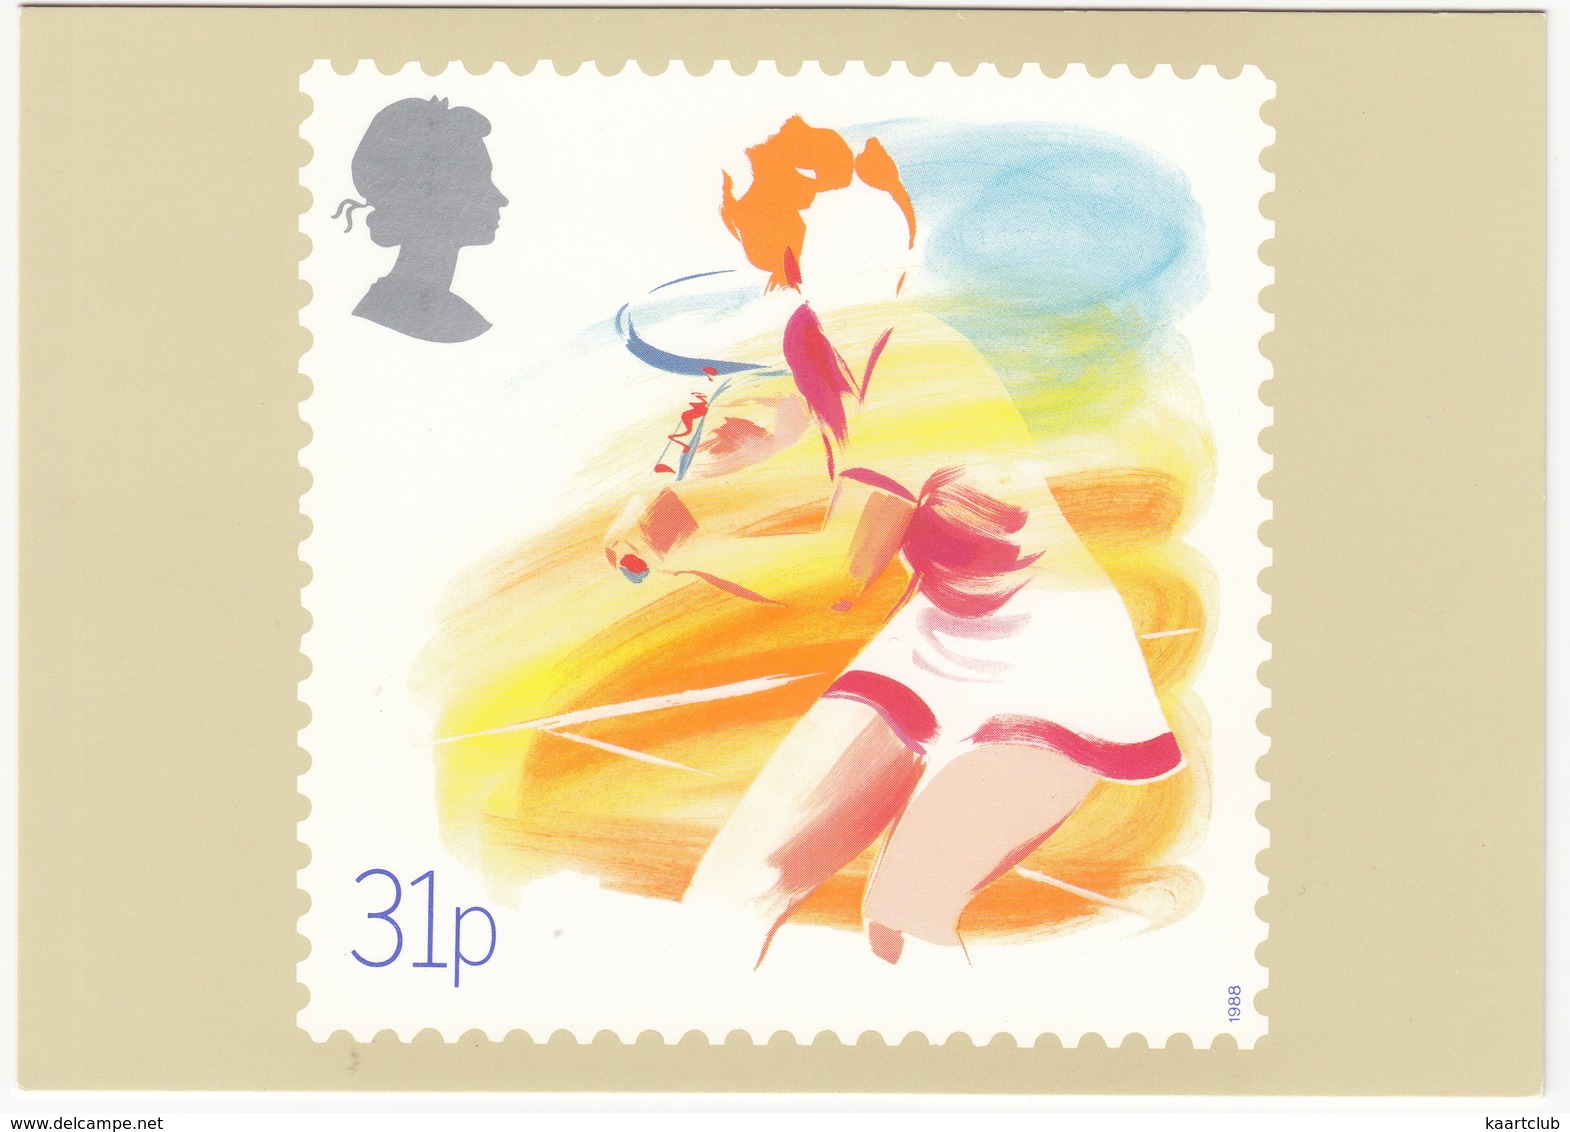 'Lawn Tennis' - Sport  (31p Stamp) -  1988 - (U.K.) - Postzegels (afbeeldingen)